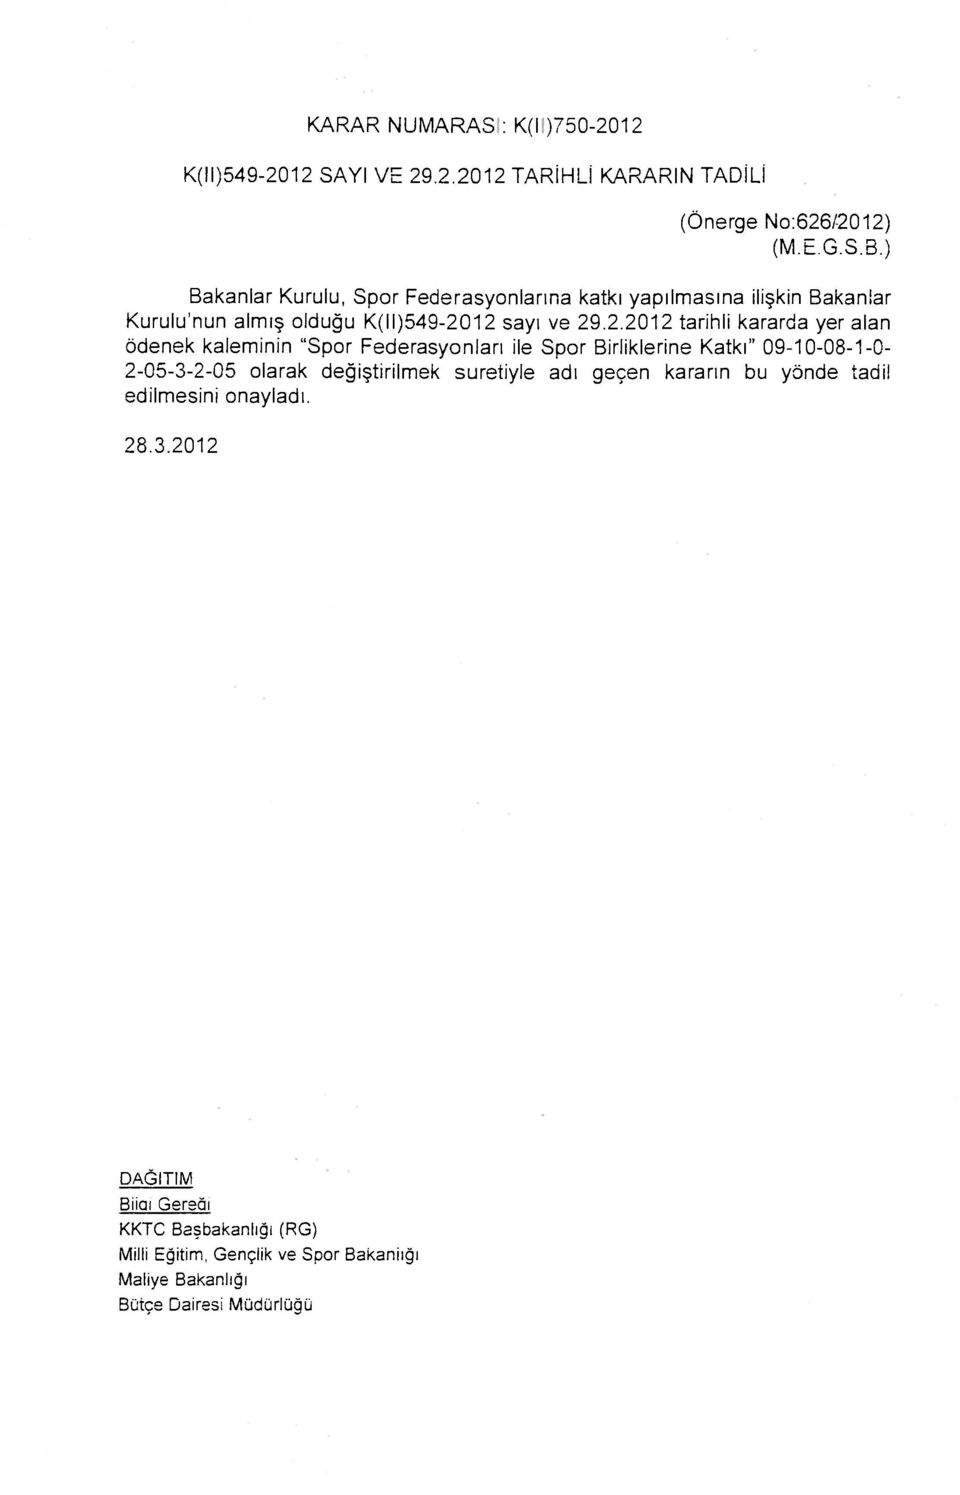 12 sayı ve 29.2.2012 tarihli kararda yer alan ödenek kaleminin "Spor Federasyonları ile Spor Birliklerine Katkı"